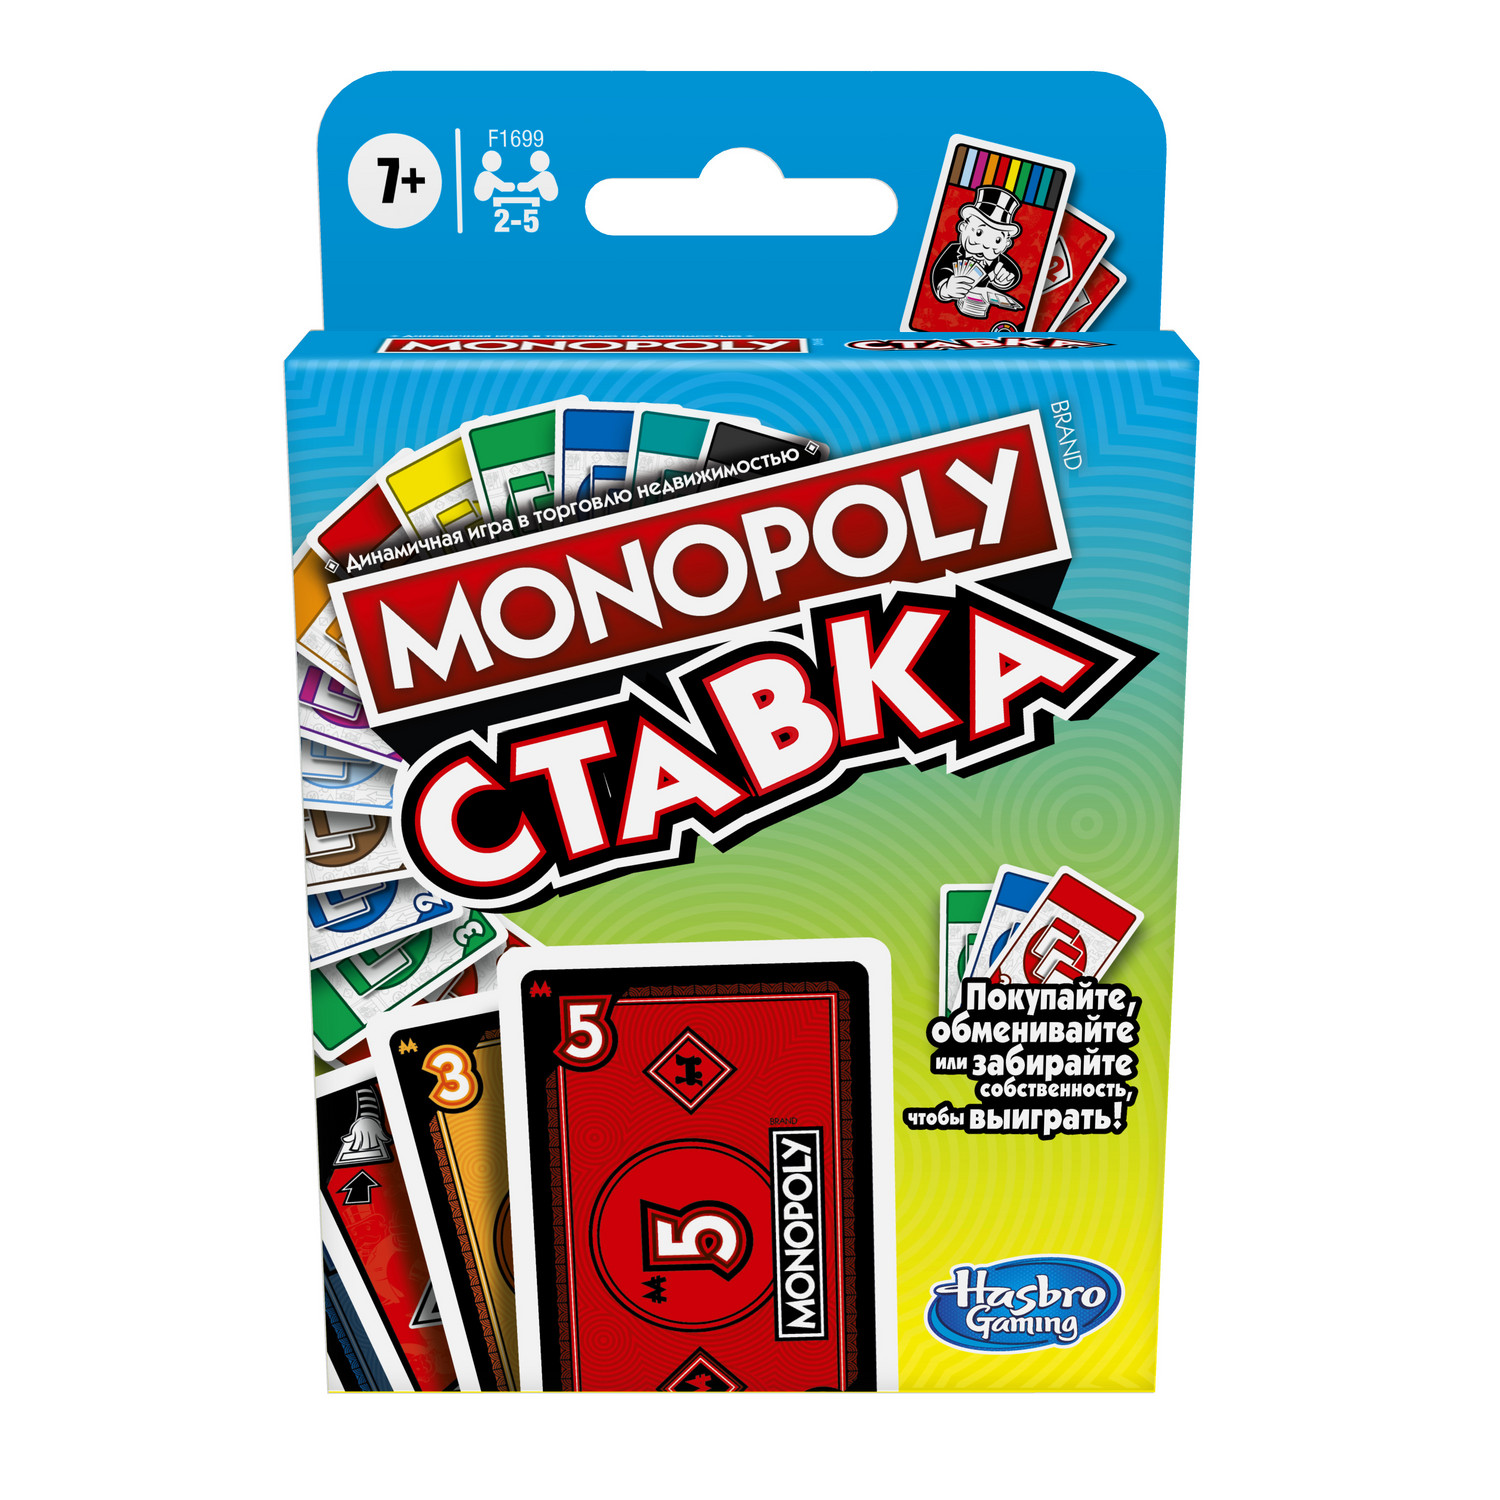 Monopoly Настольная игра монополия Ставка